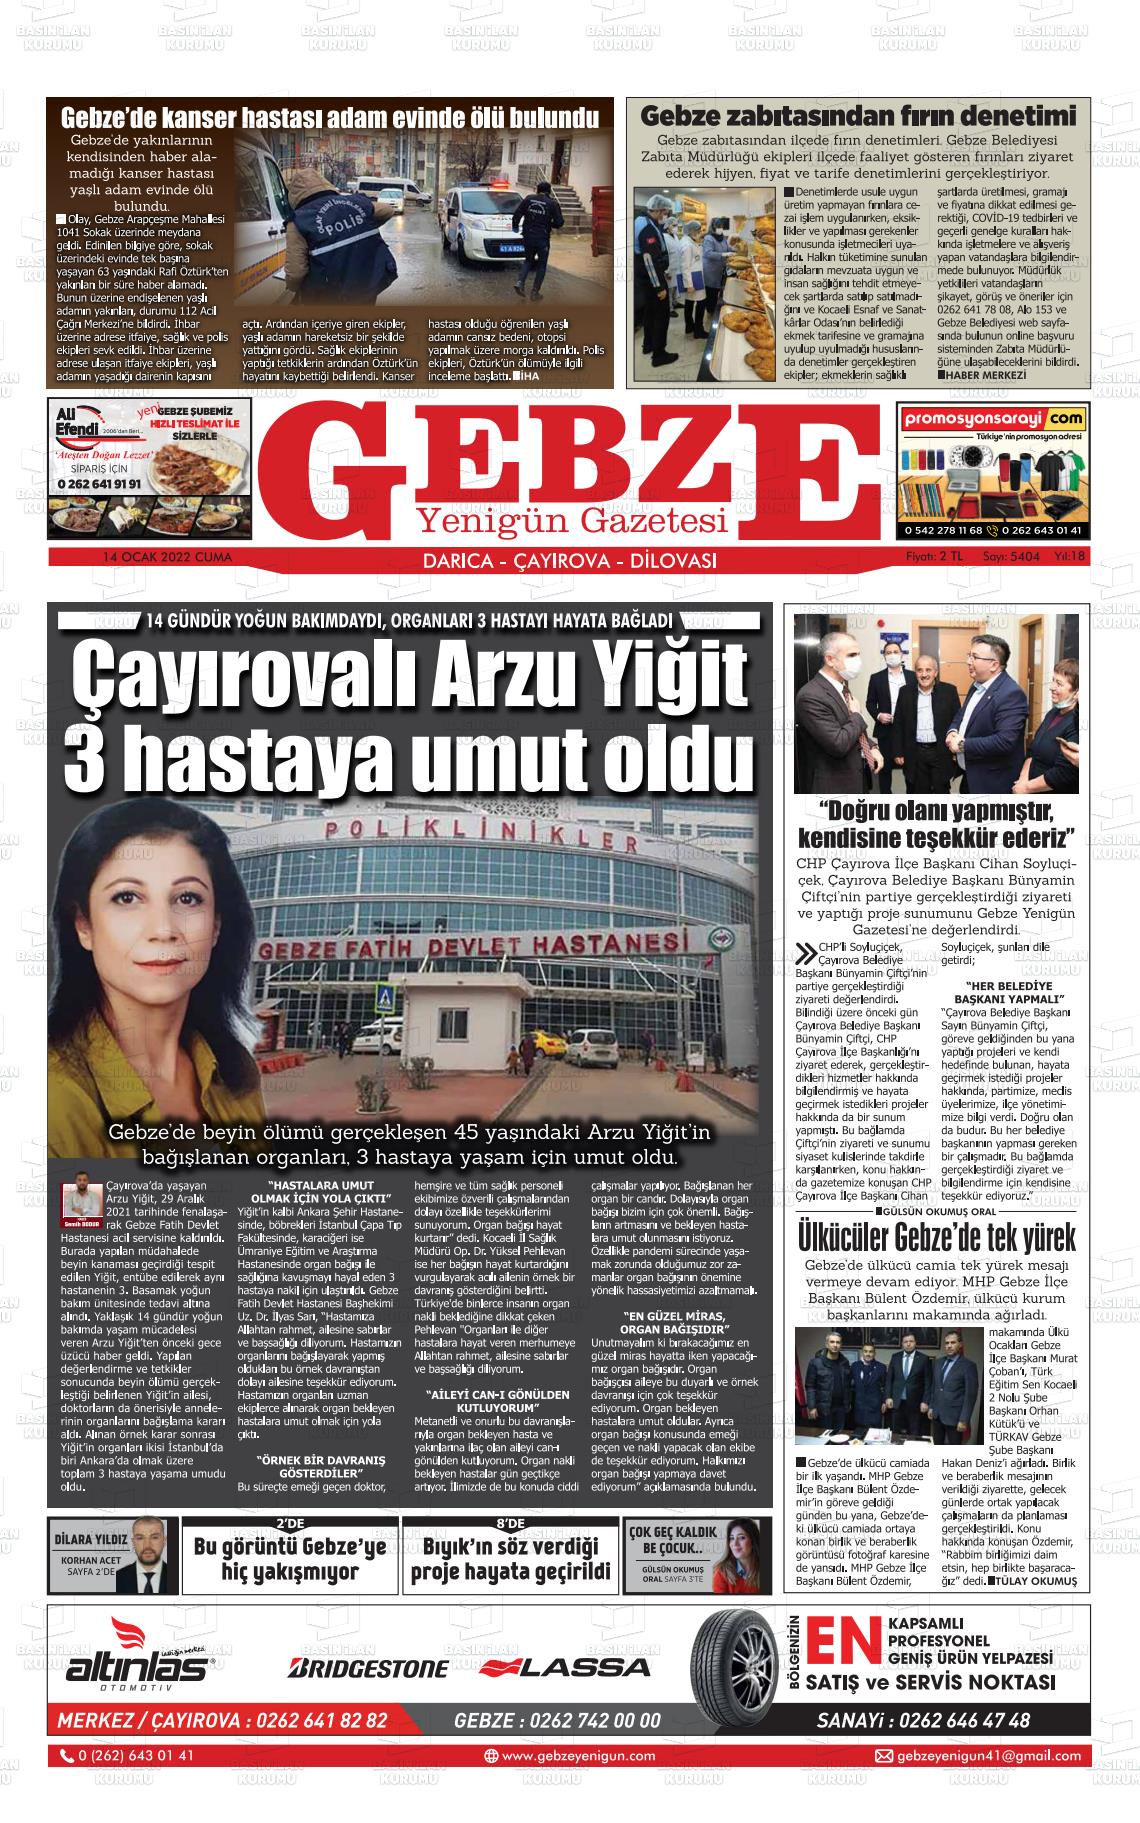 14 Ocak 2022 Gebze Yenigün Gazete Manşeti